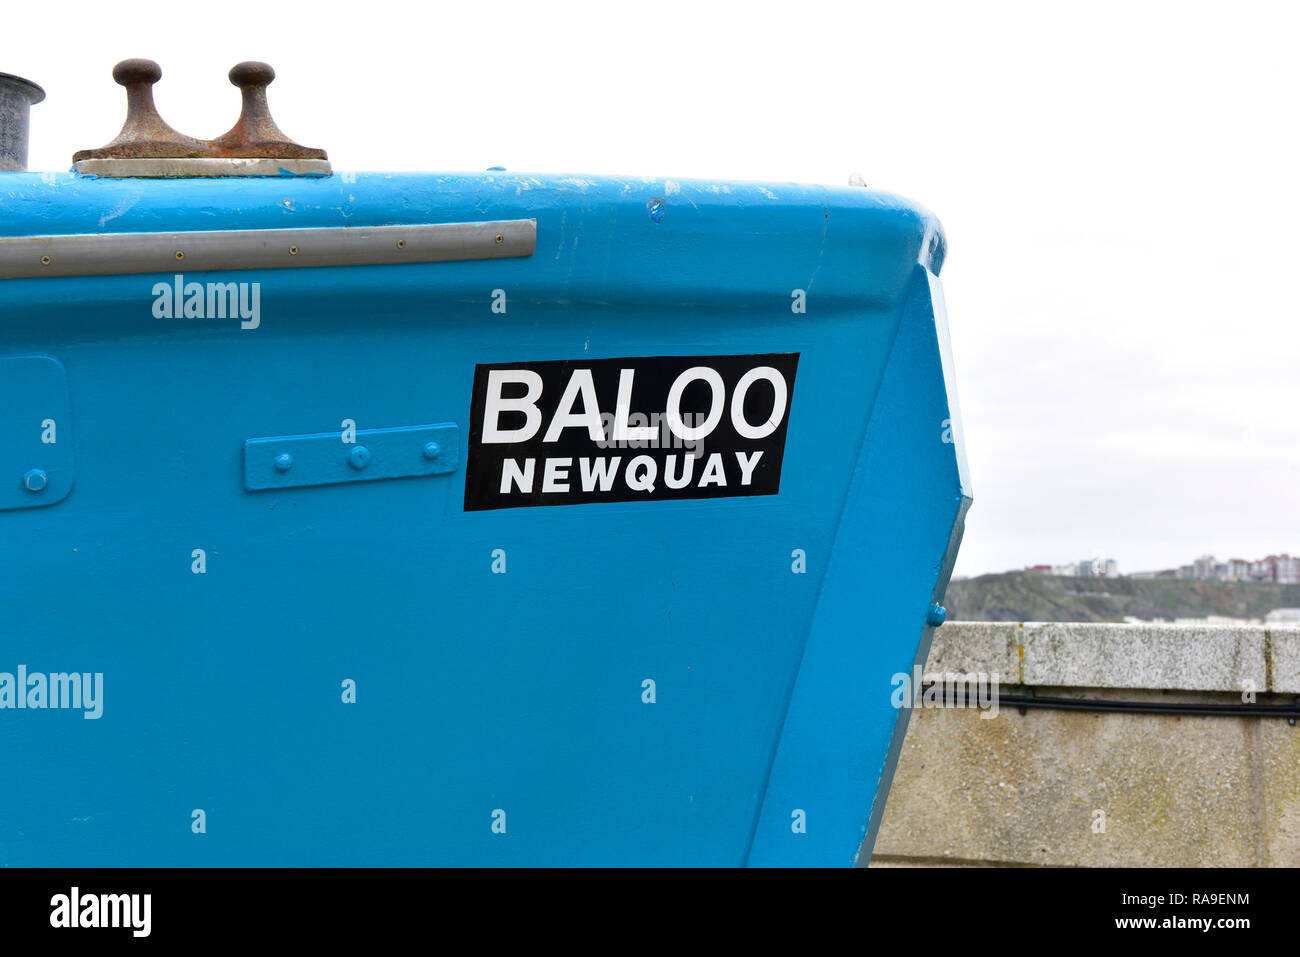 Eine Detailansicht der Name auf dem Fischerboot Baloo in Newquay Hafen Hafen in Newquay in Cornwall. Stockfoto